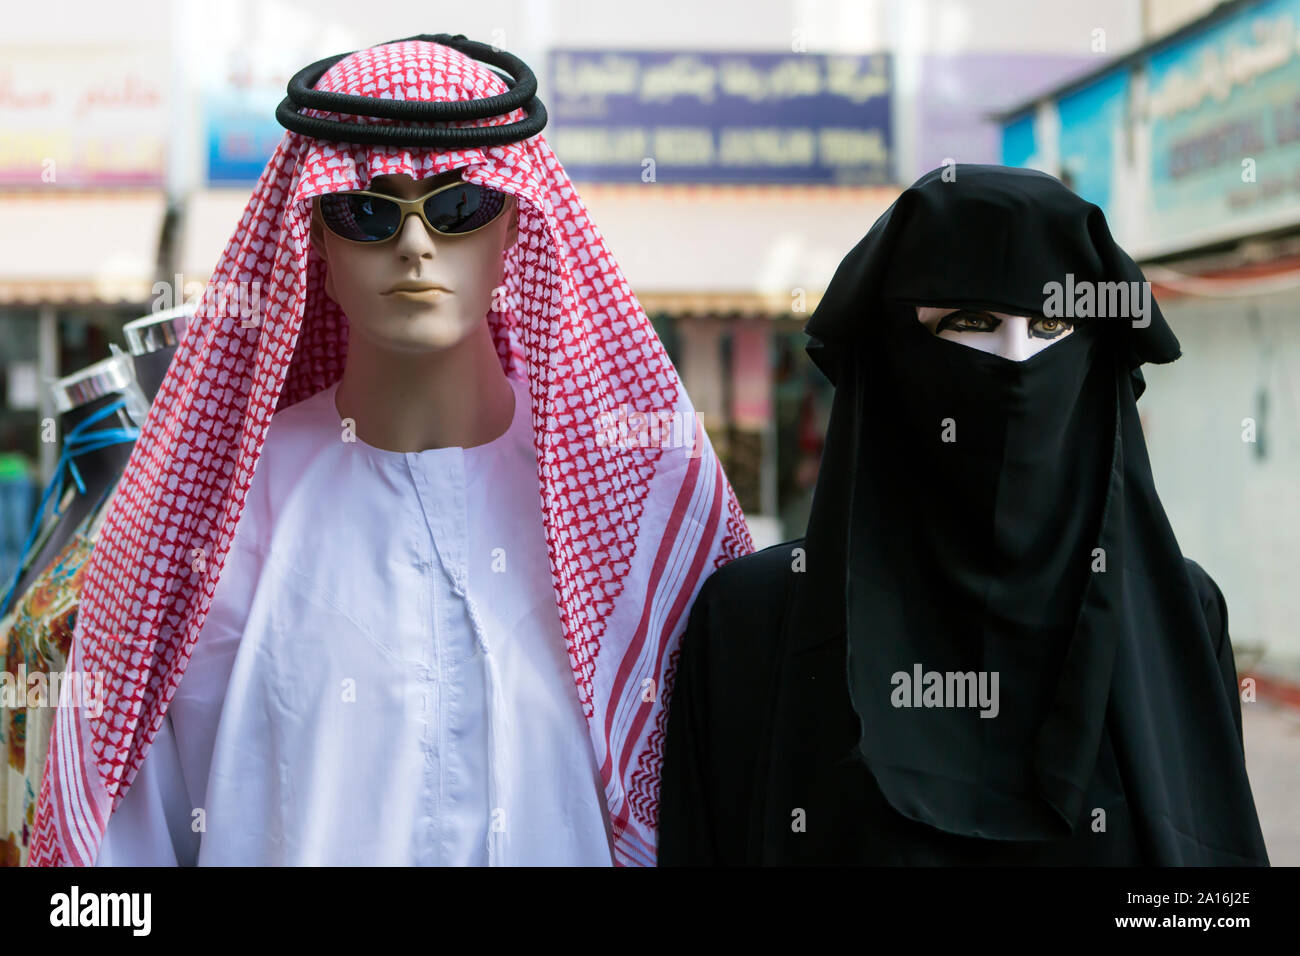 DUBAI - Traditionelle arabische Kleidung auf dem Display vor einem Geschäft im Souk. Stockfoto